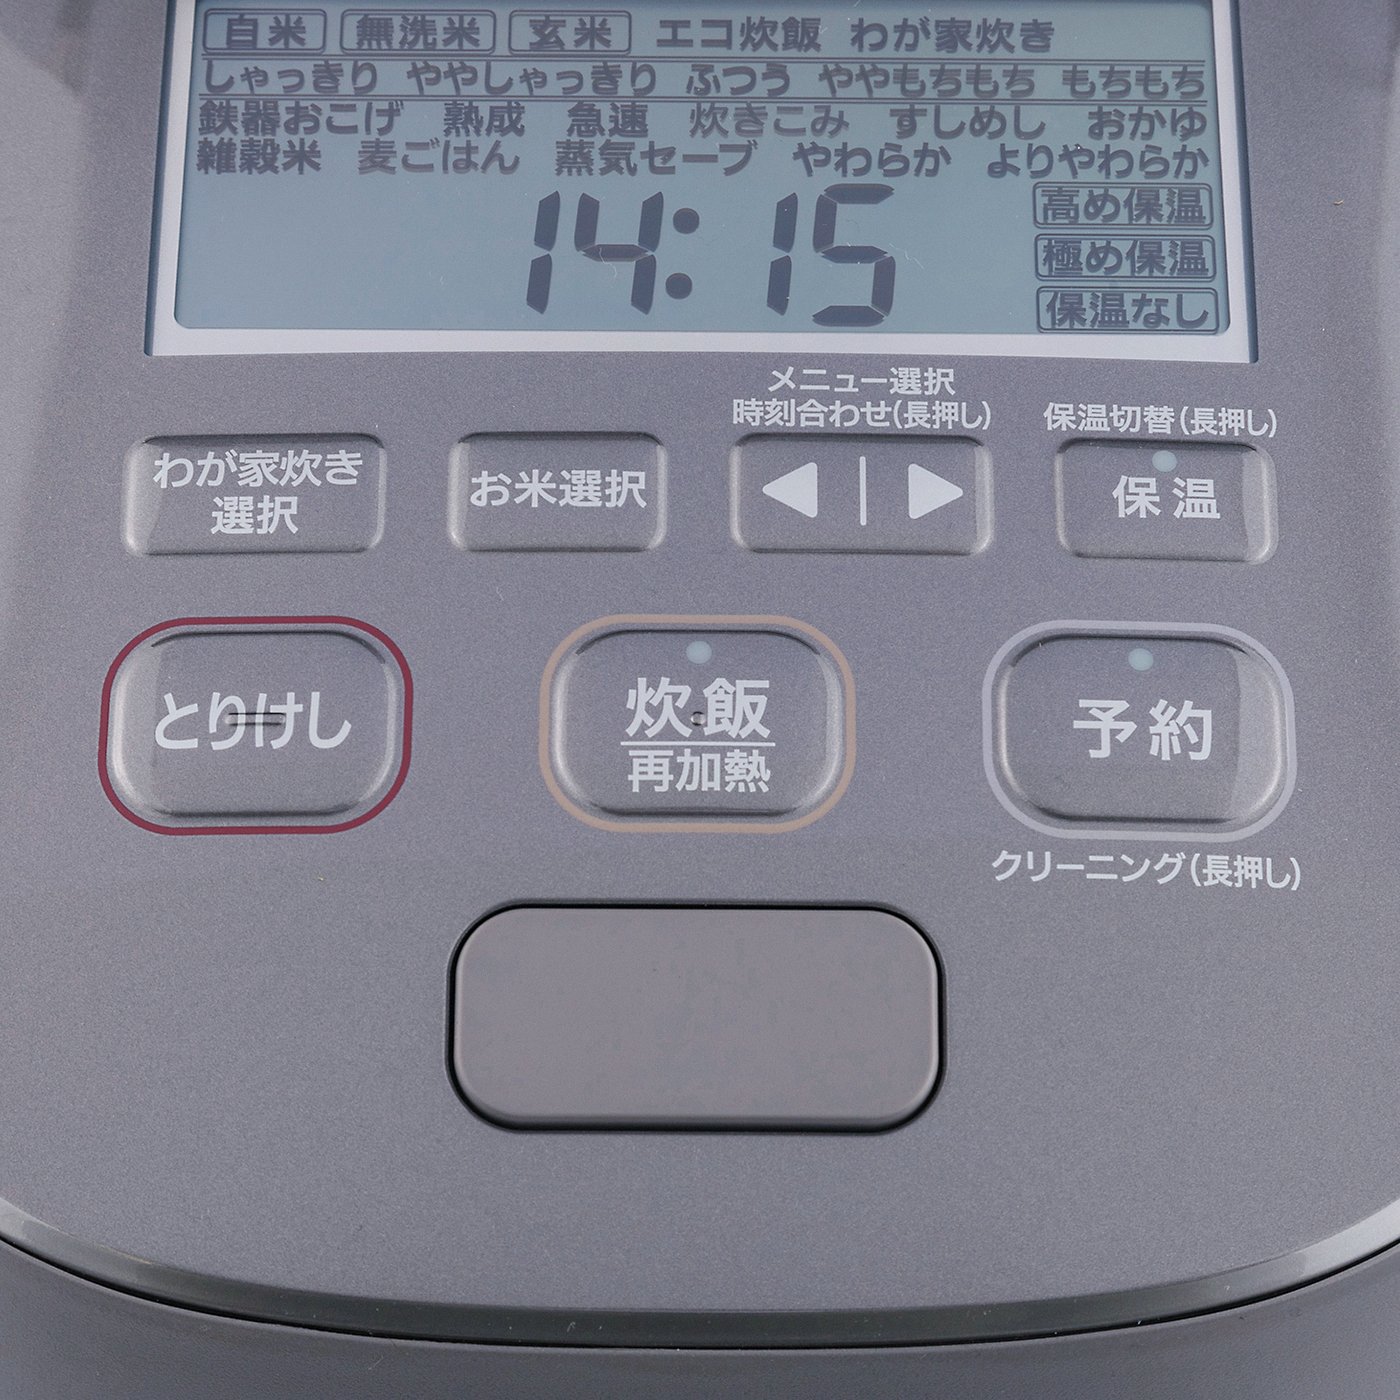 象印 炊飯器 圧力IH炊飯ジャー（5.5合炊き） 濃墨 ZOJIRUSHI 炎舞炊き NW-PT10-BZ - 3